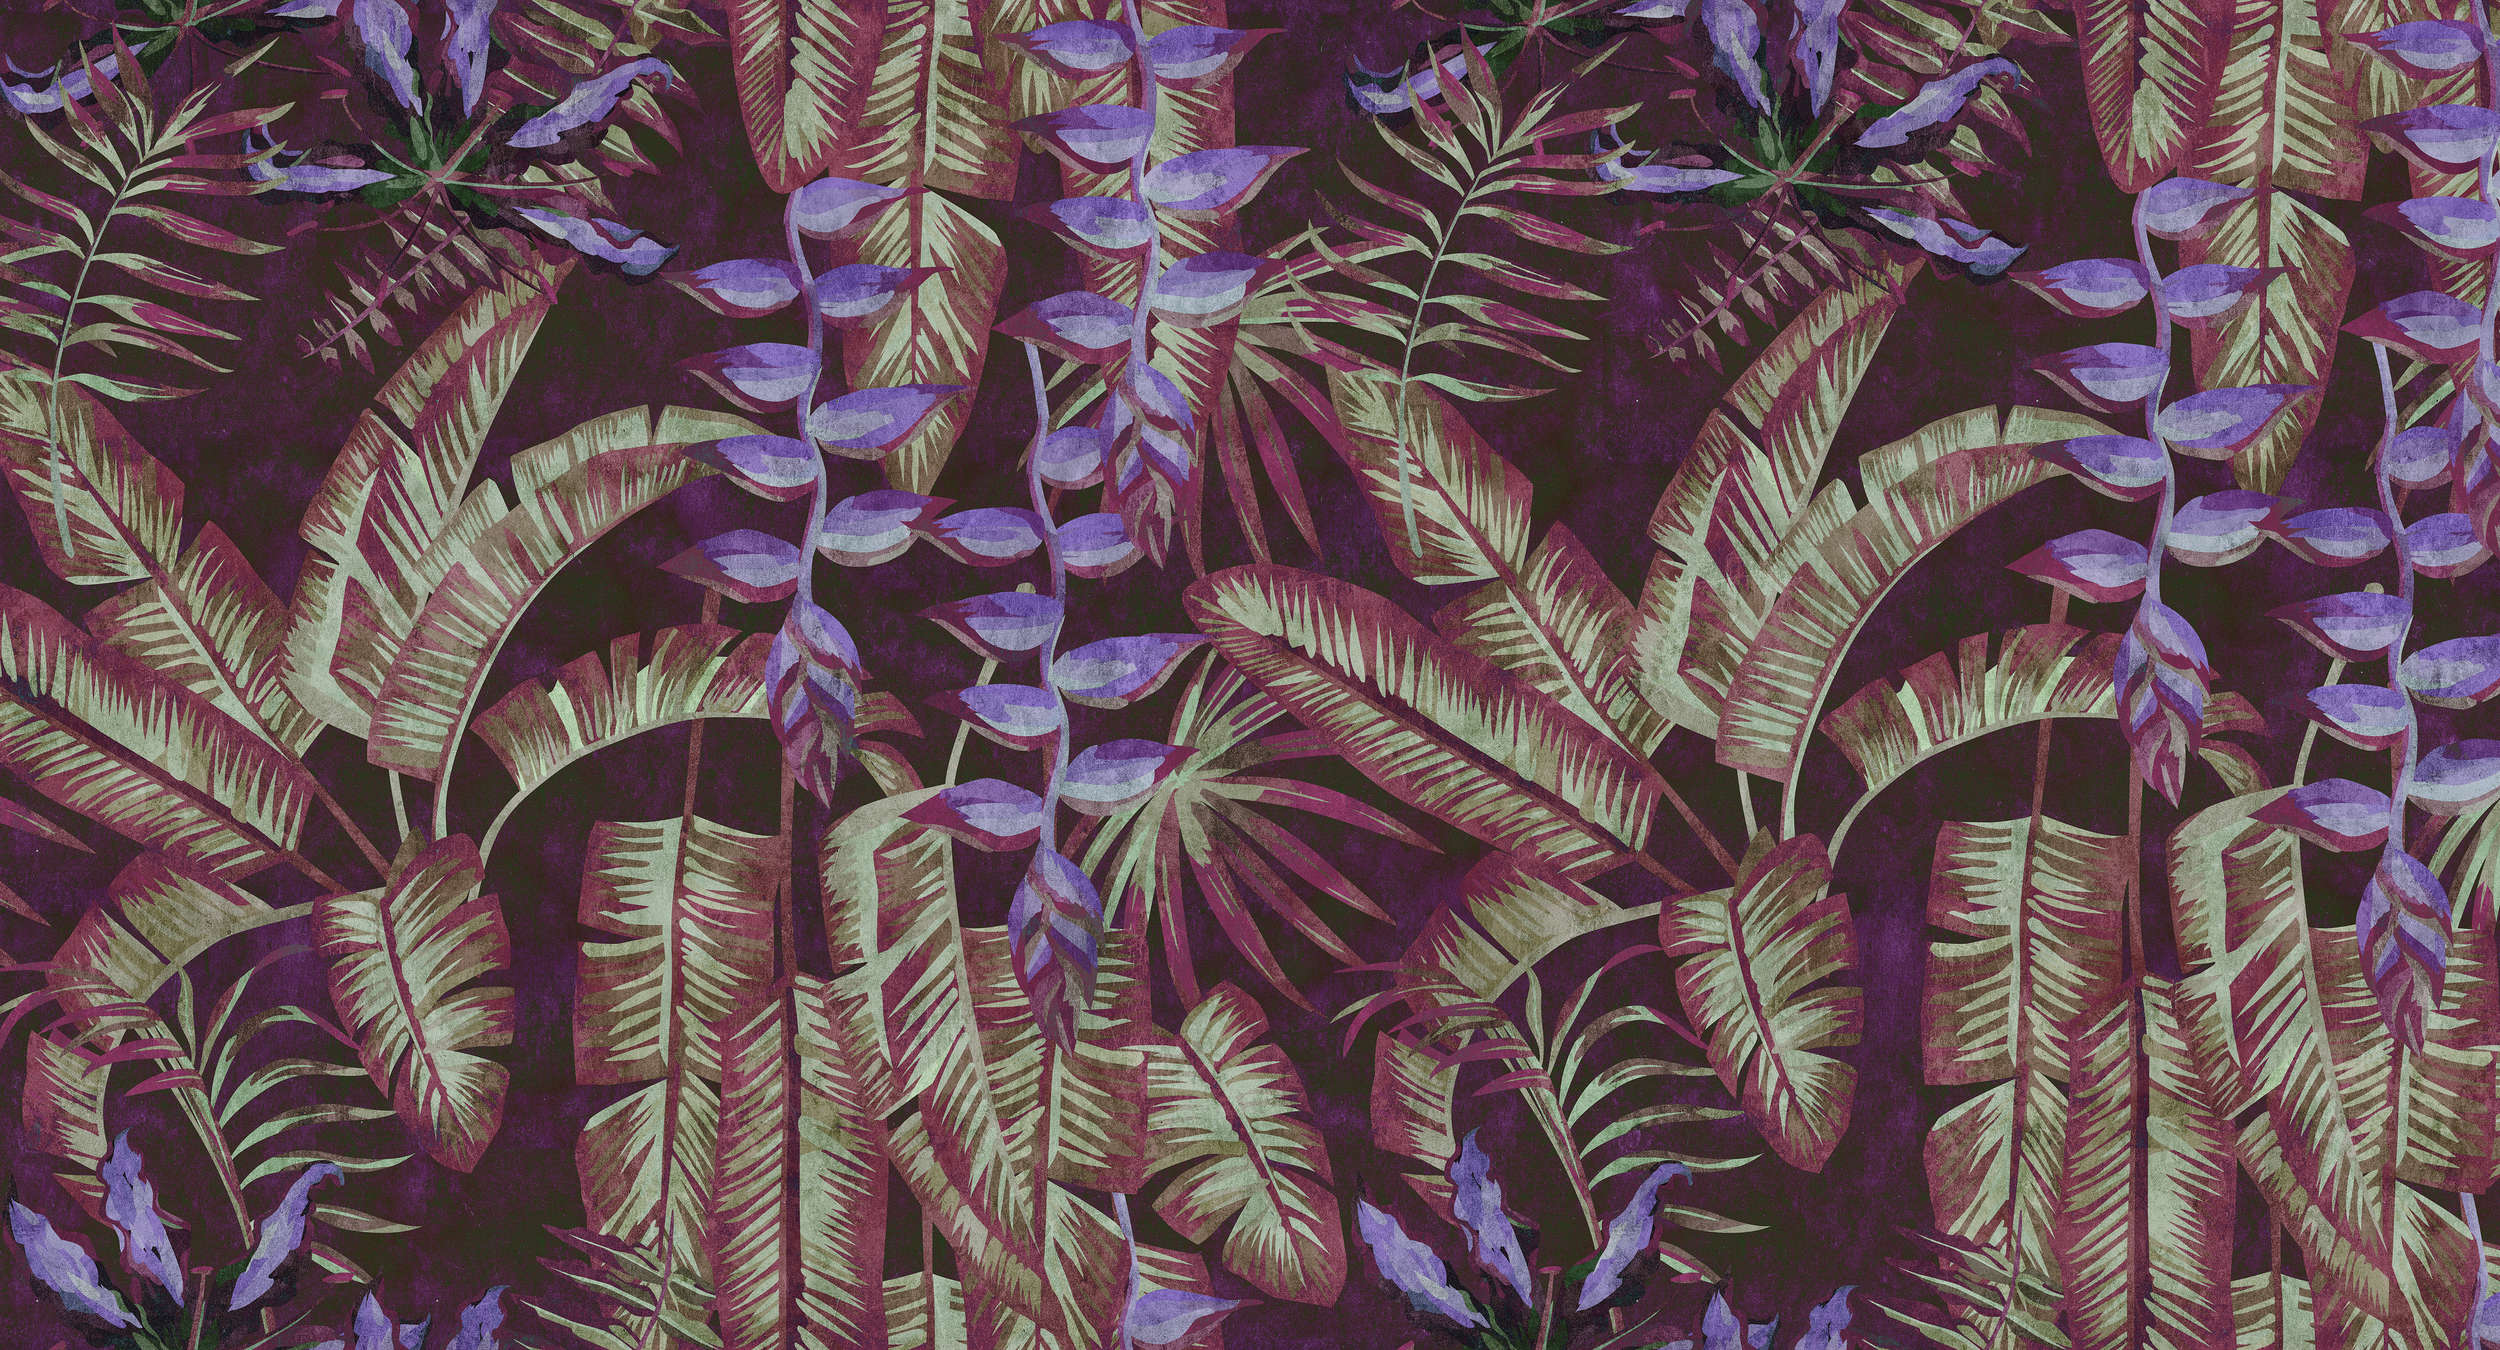             Tropicana 3 - Carta da parati tropicale in carta assorbente con foglie e felci - Rosso, viola | Materiali non tessuto liscio perlato
        